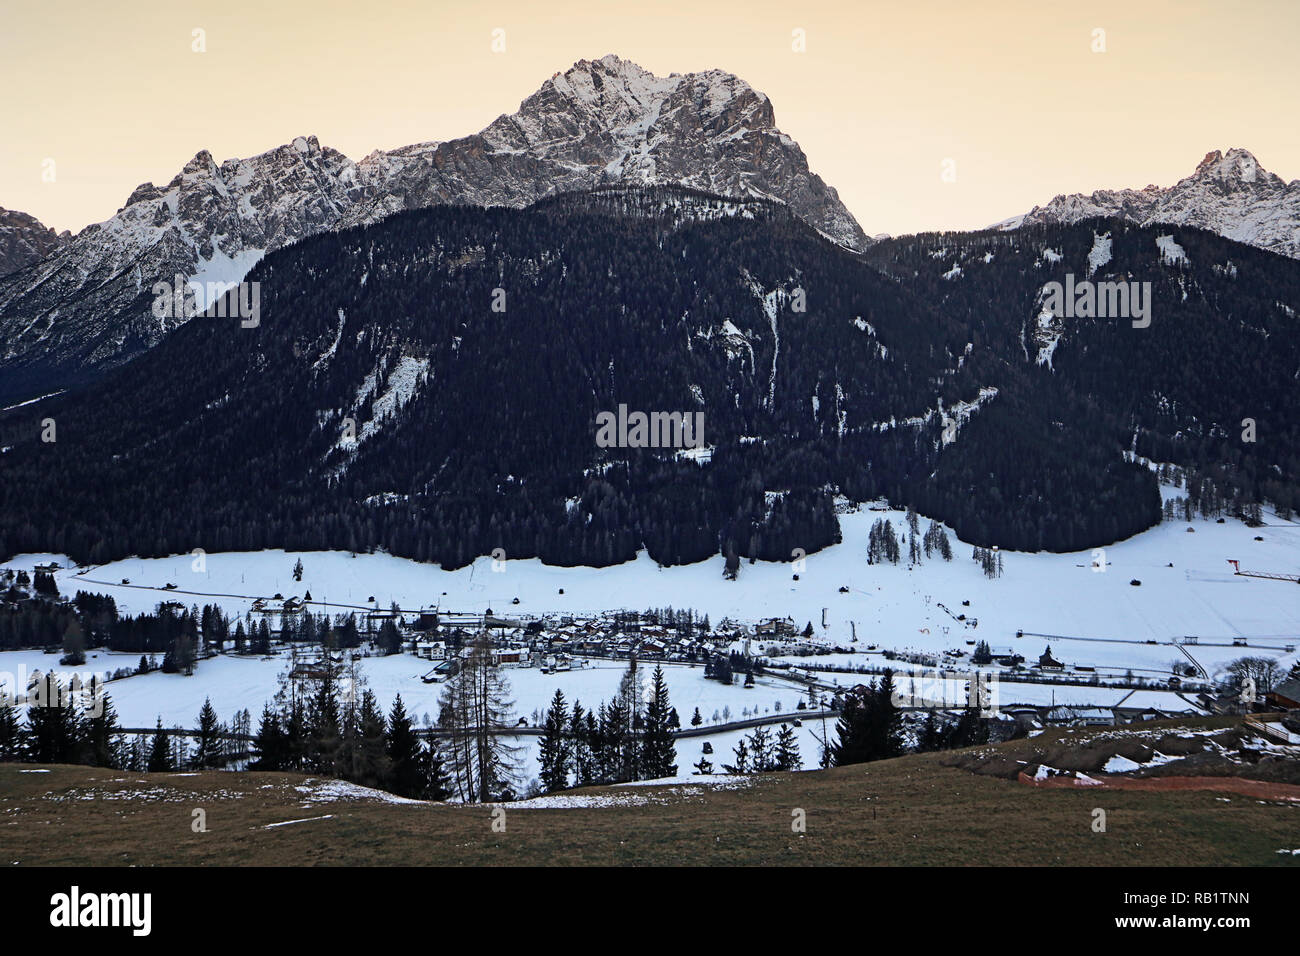 Dolomiti di Sesto, Italie (Dolomites de Sesto), vue aérienne de la vallée de Pusteria avec Sesto village et les montagnes des Dolomites en hiver Banque D'Images